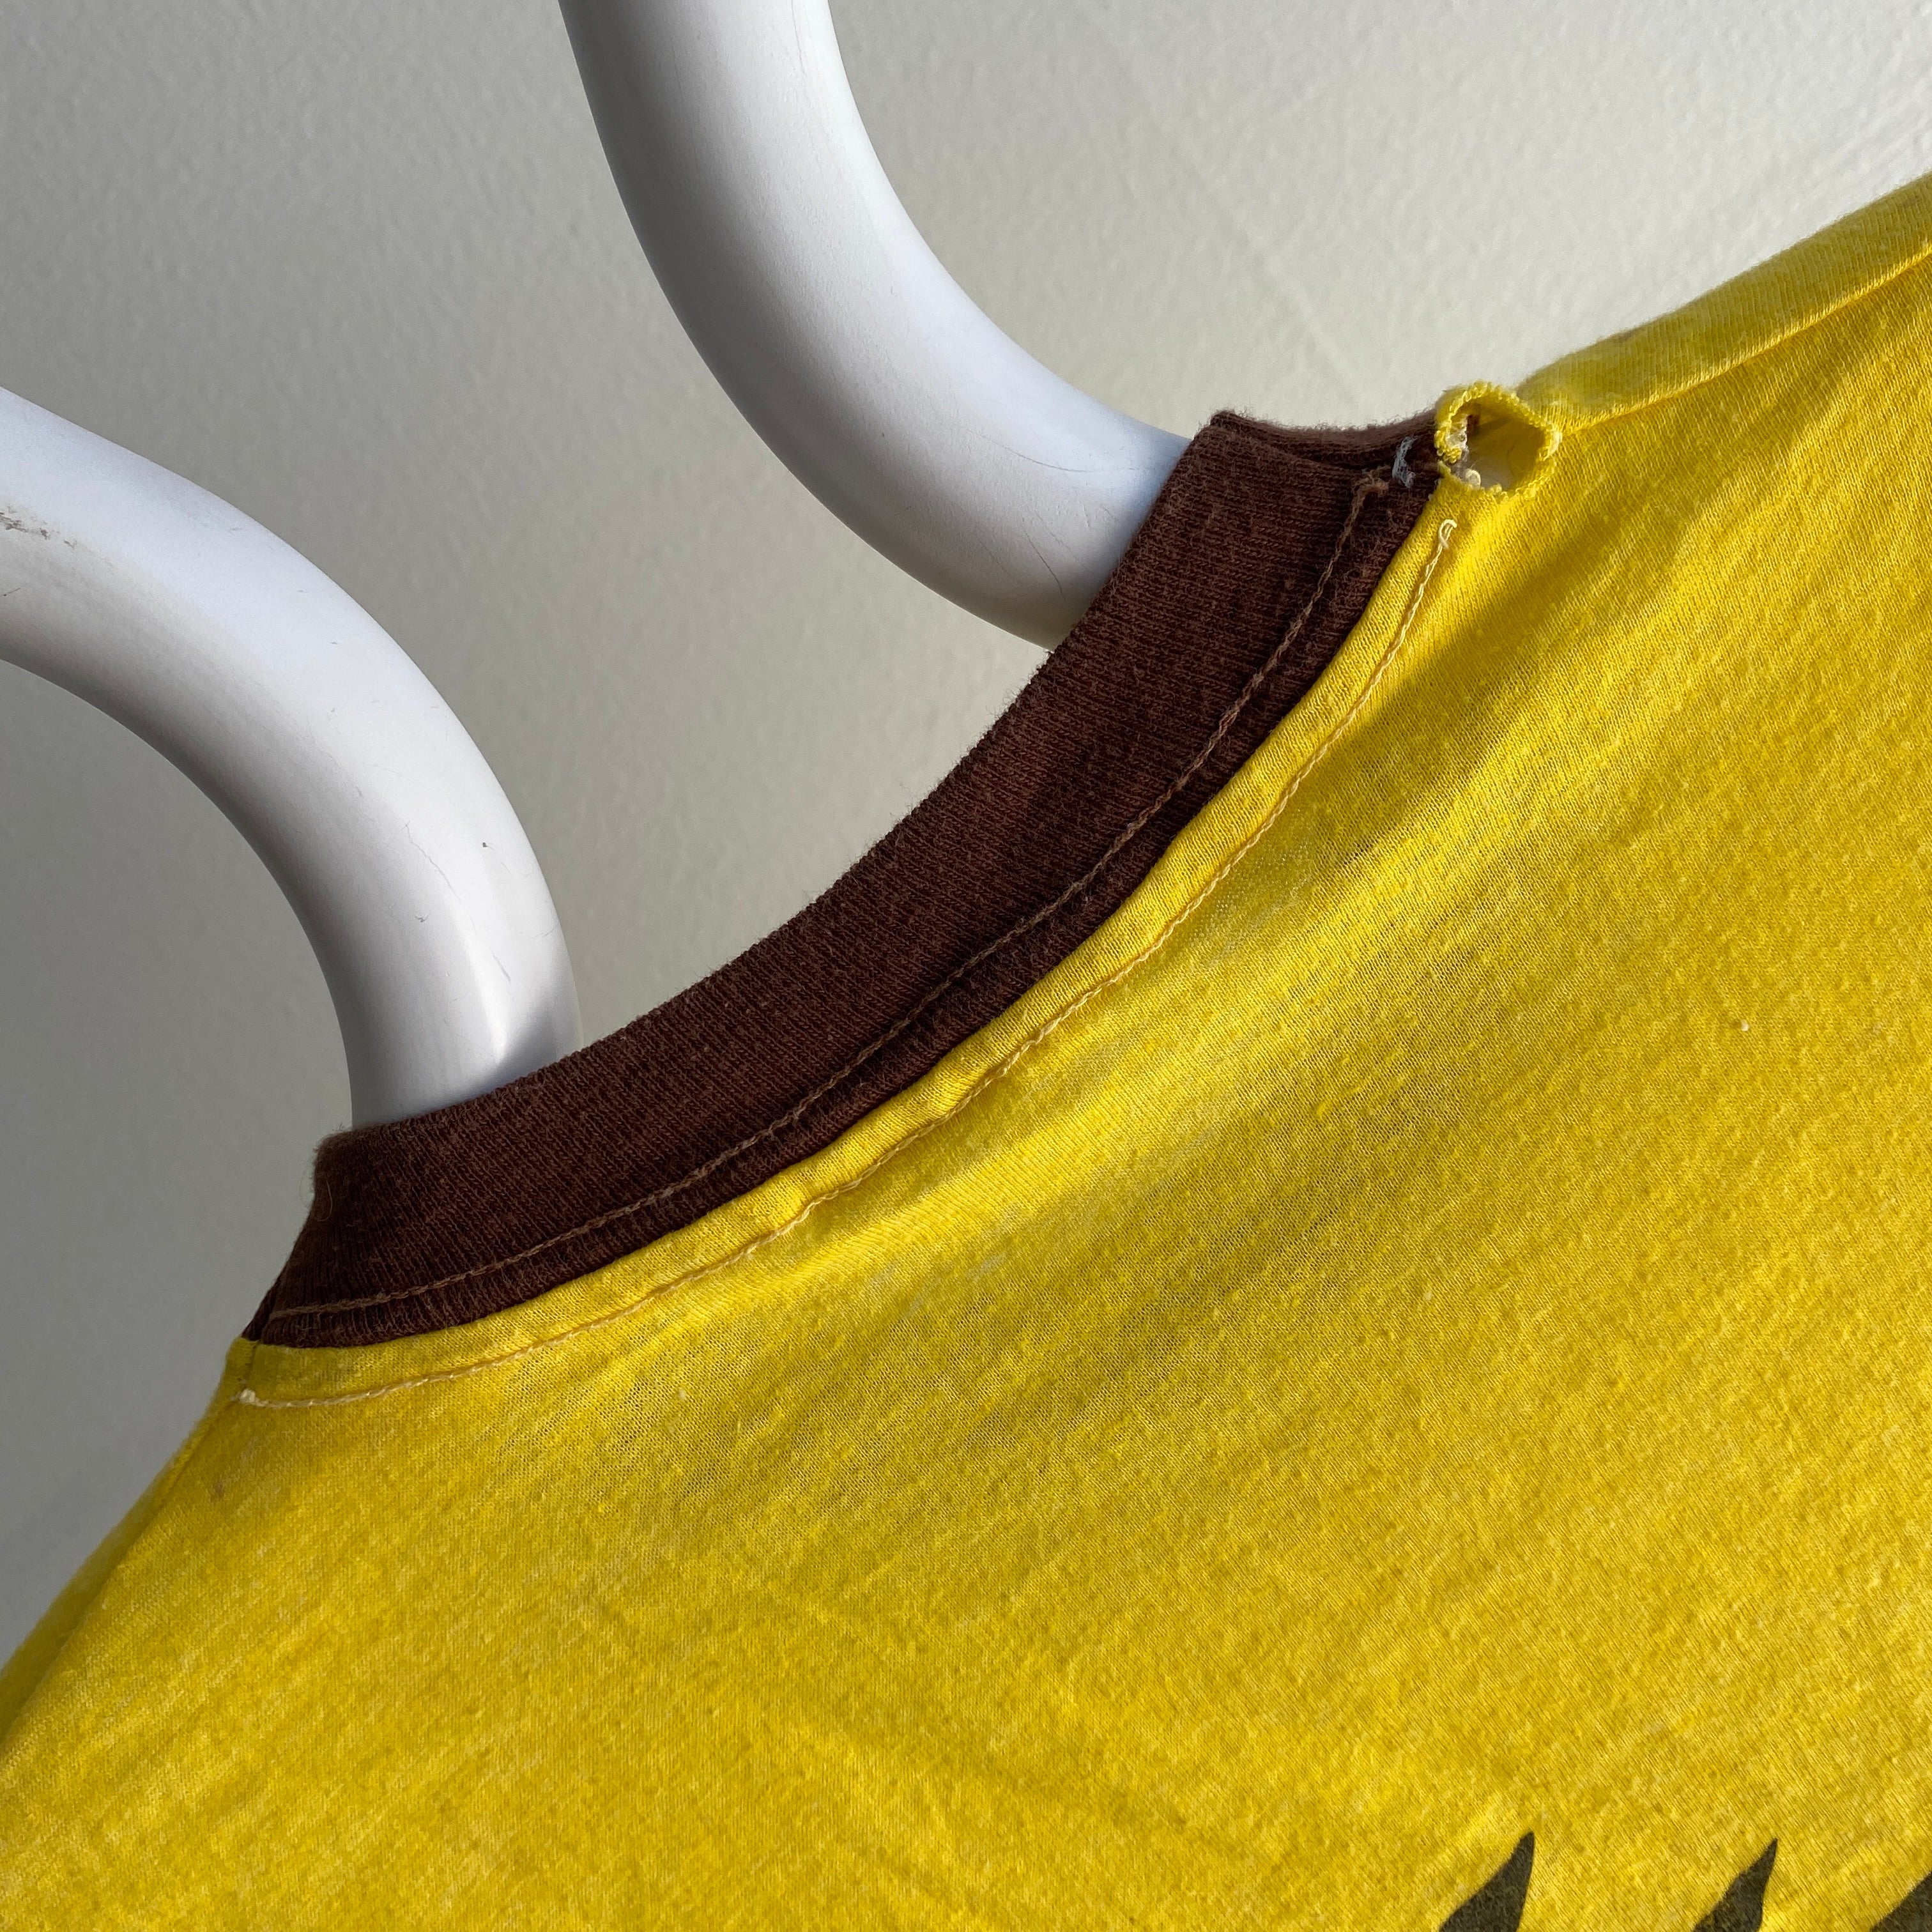 1984 The Meadowlands Cup SUPER STAINED T-shirt à anneaux jaune vif et marron de petite taille